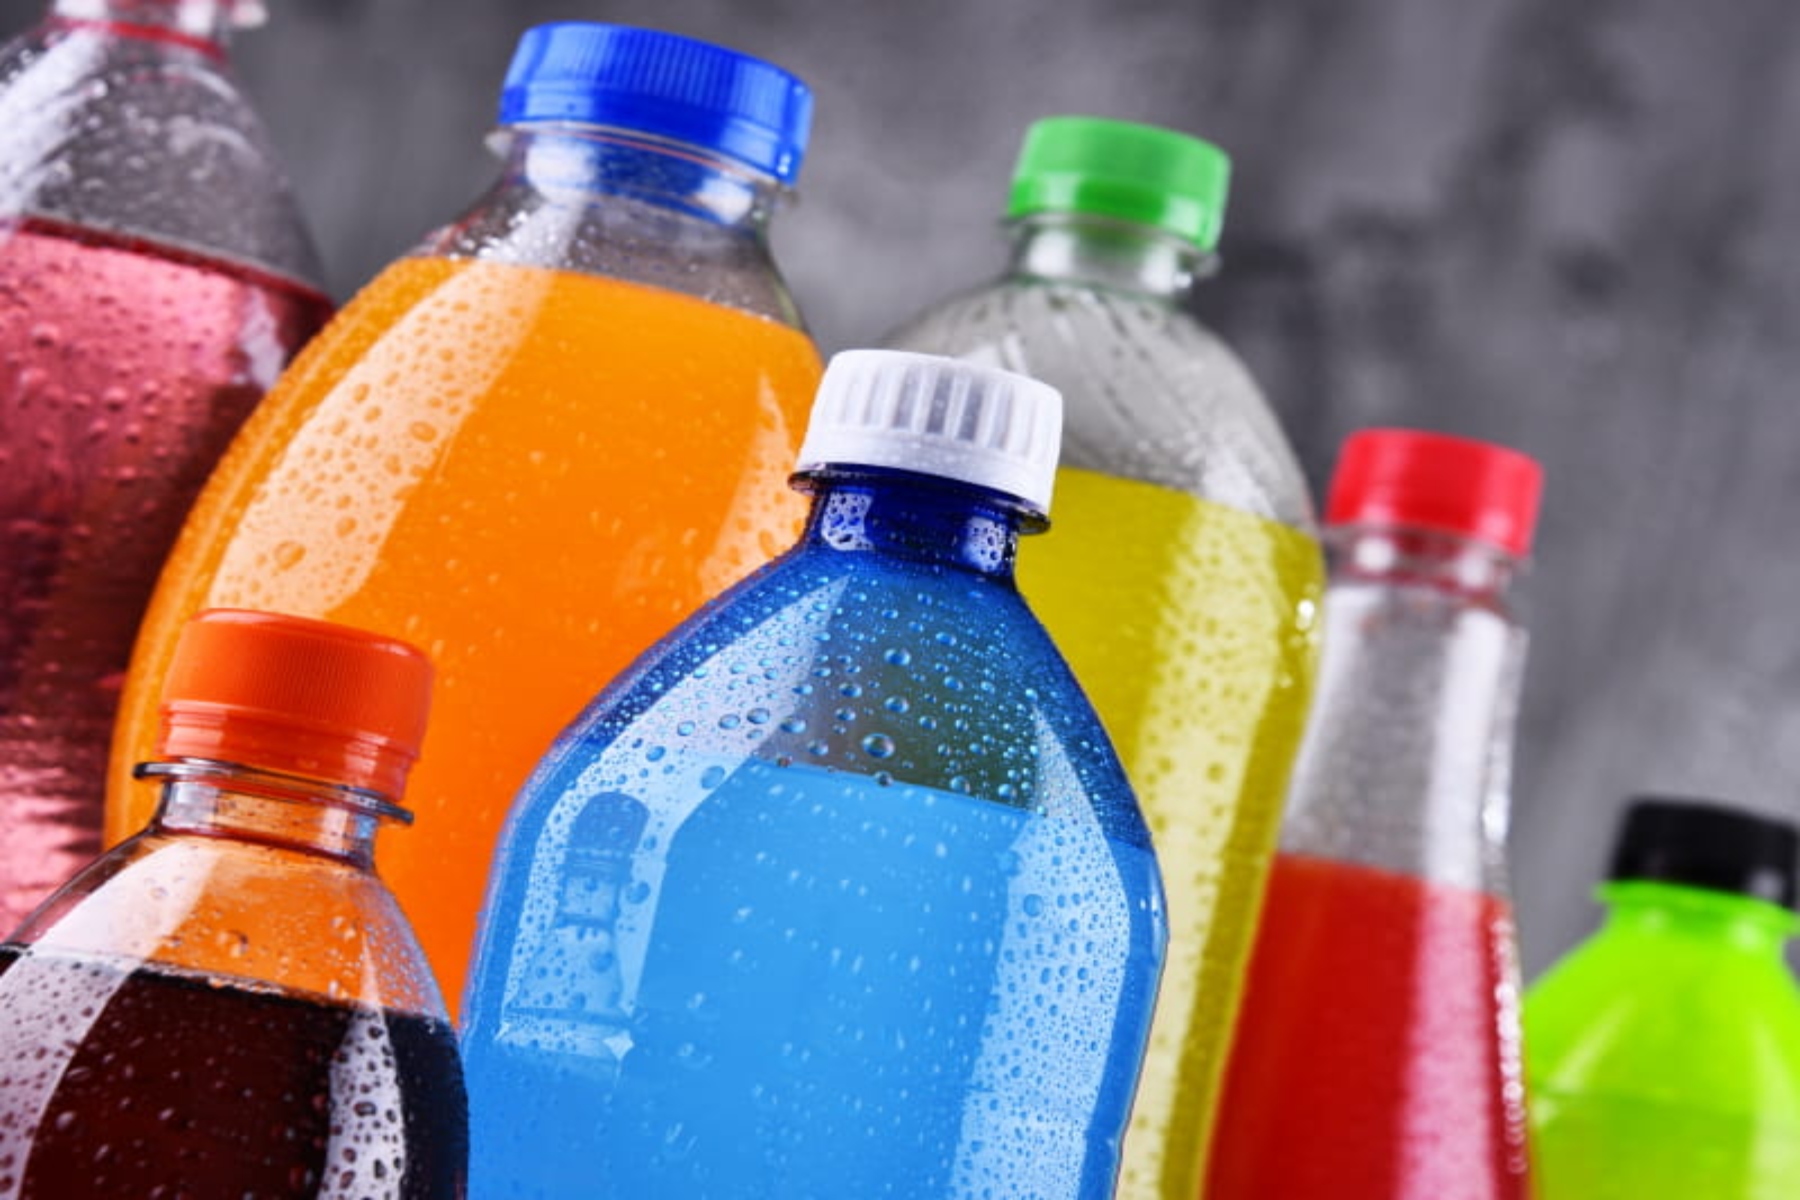 Μελέτη ποτά: Η κατανάλωση ζαχαρούχων ποτών αυξάνει τον κίνδυνο καρδιακών παθήσεων